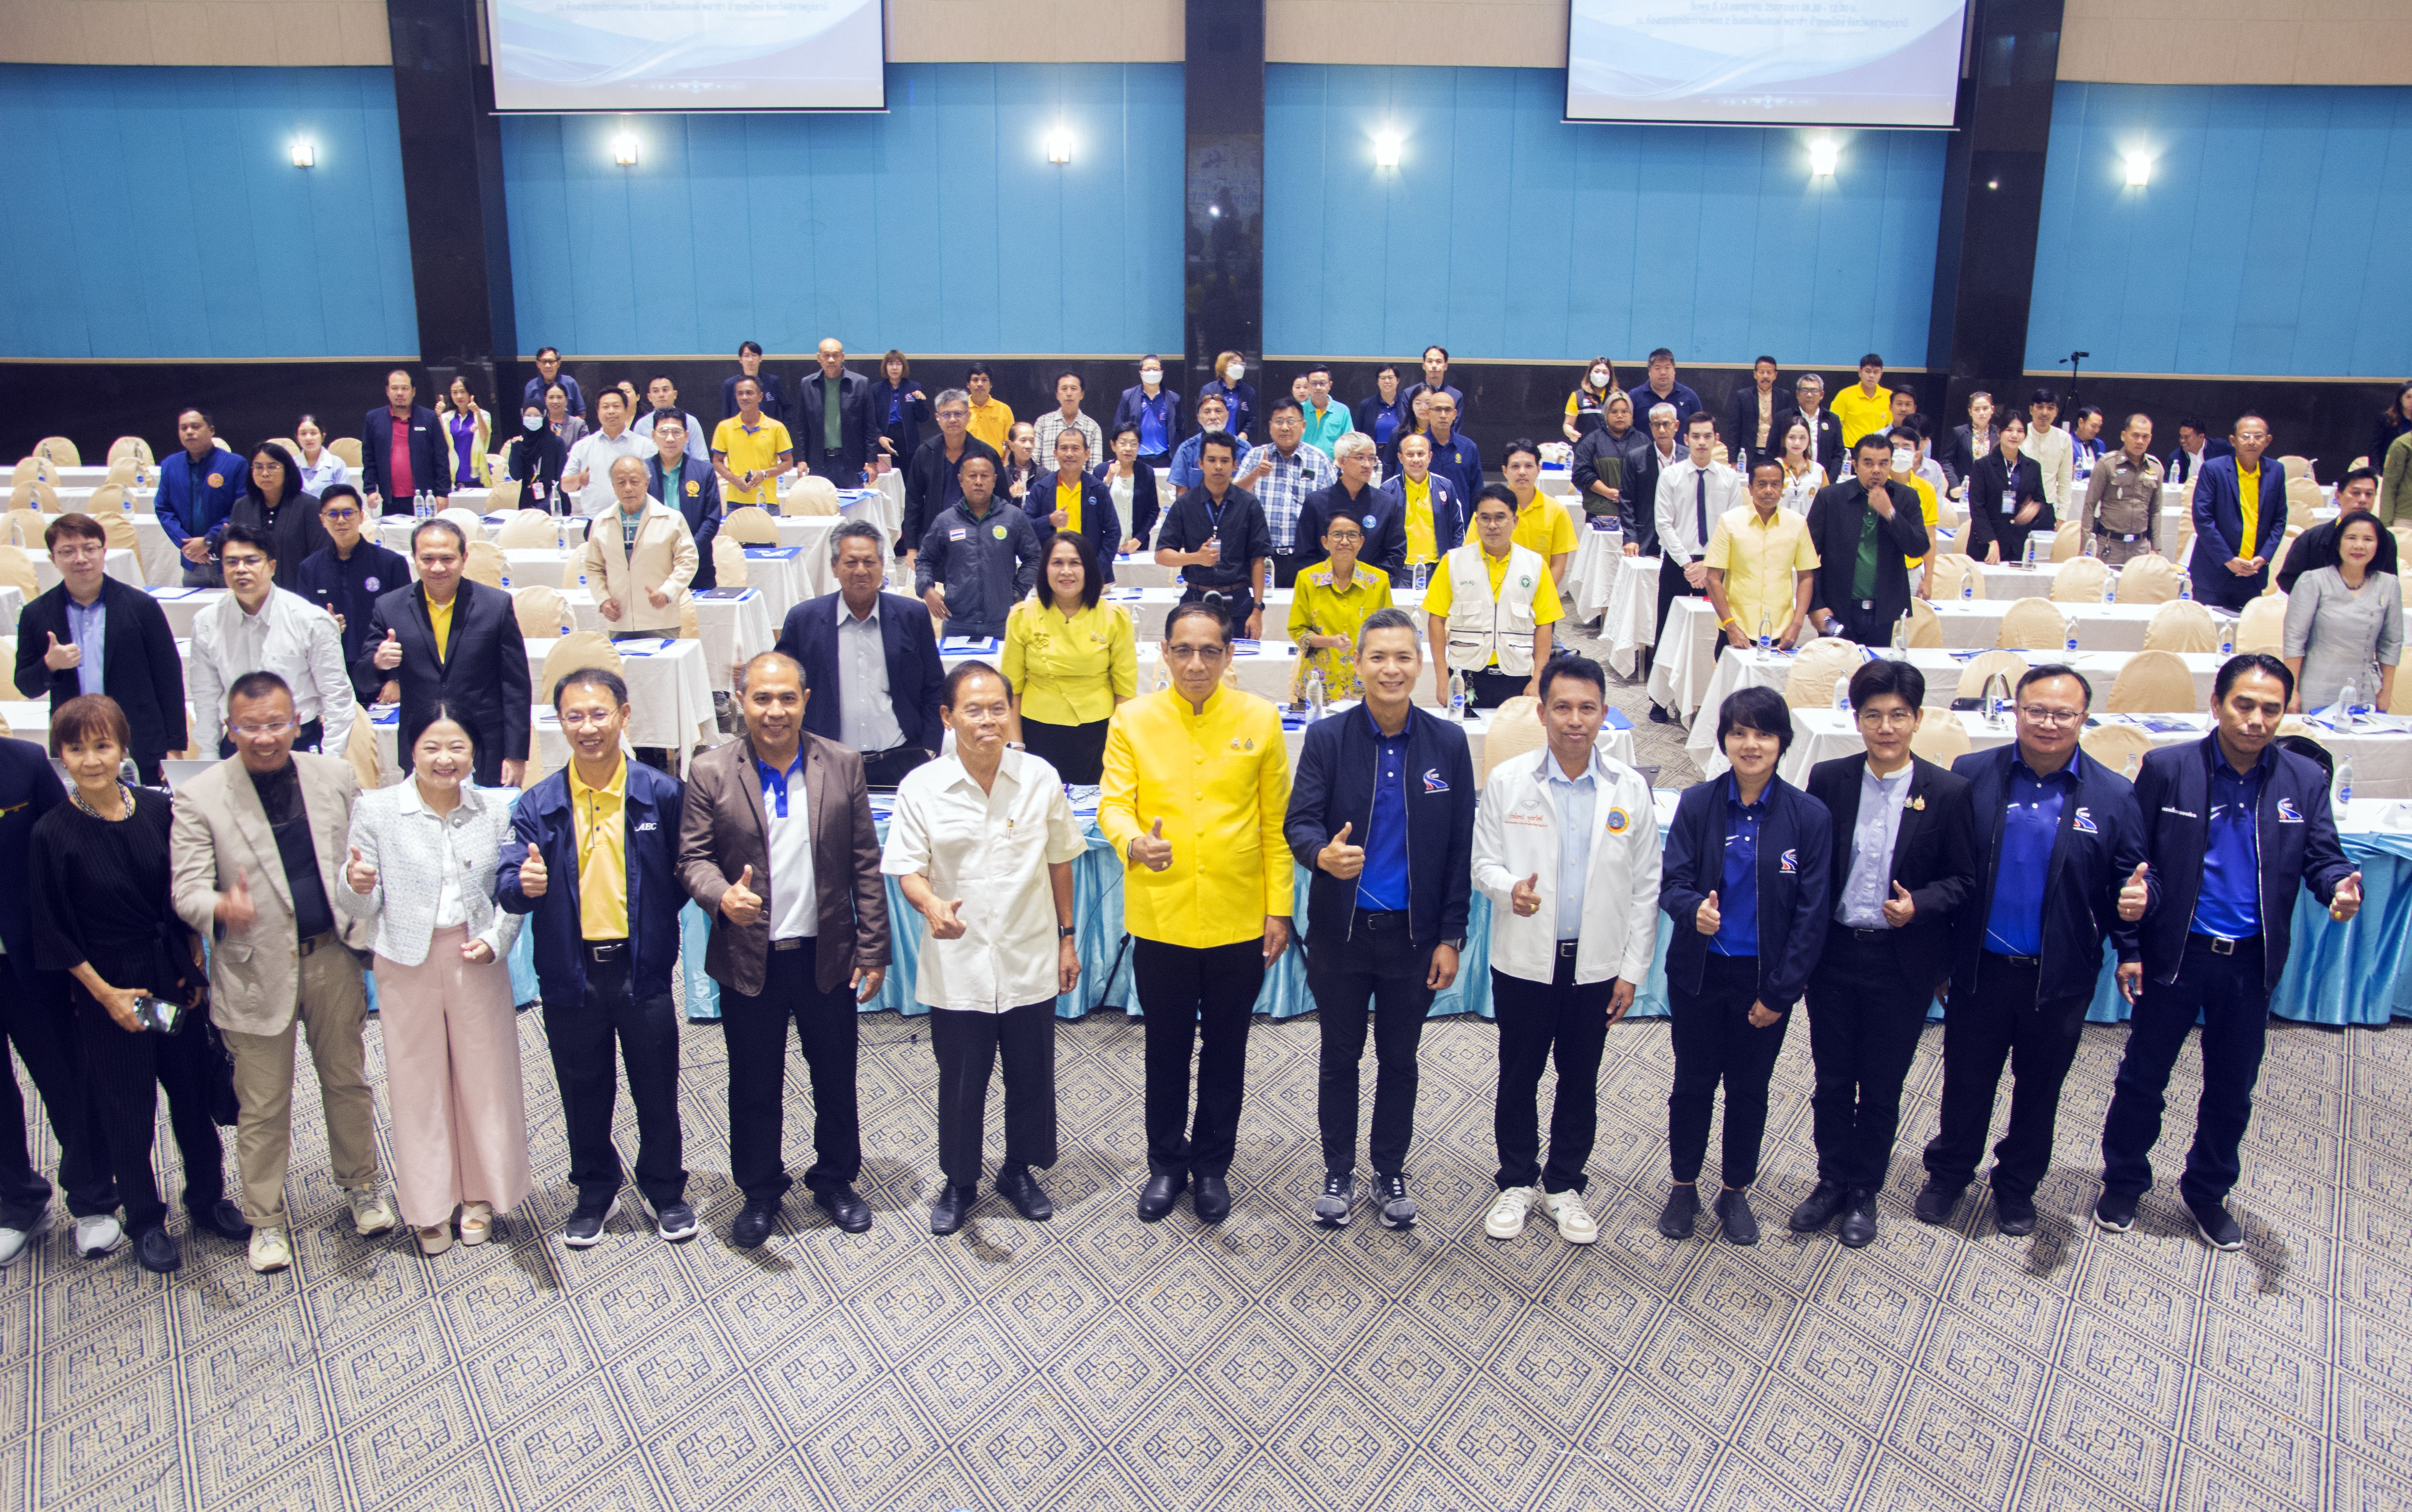 การทางพิเศษแห่งประเทศไทยจัดการประชุมรับฟังความคิดเห็นของประชาชน ครั้งที่ 2 โครงการทางพิเศษเชื่อมเกาะสมุย ณ จังหวัดสุราษฎร์ธานี